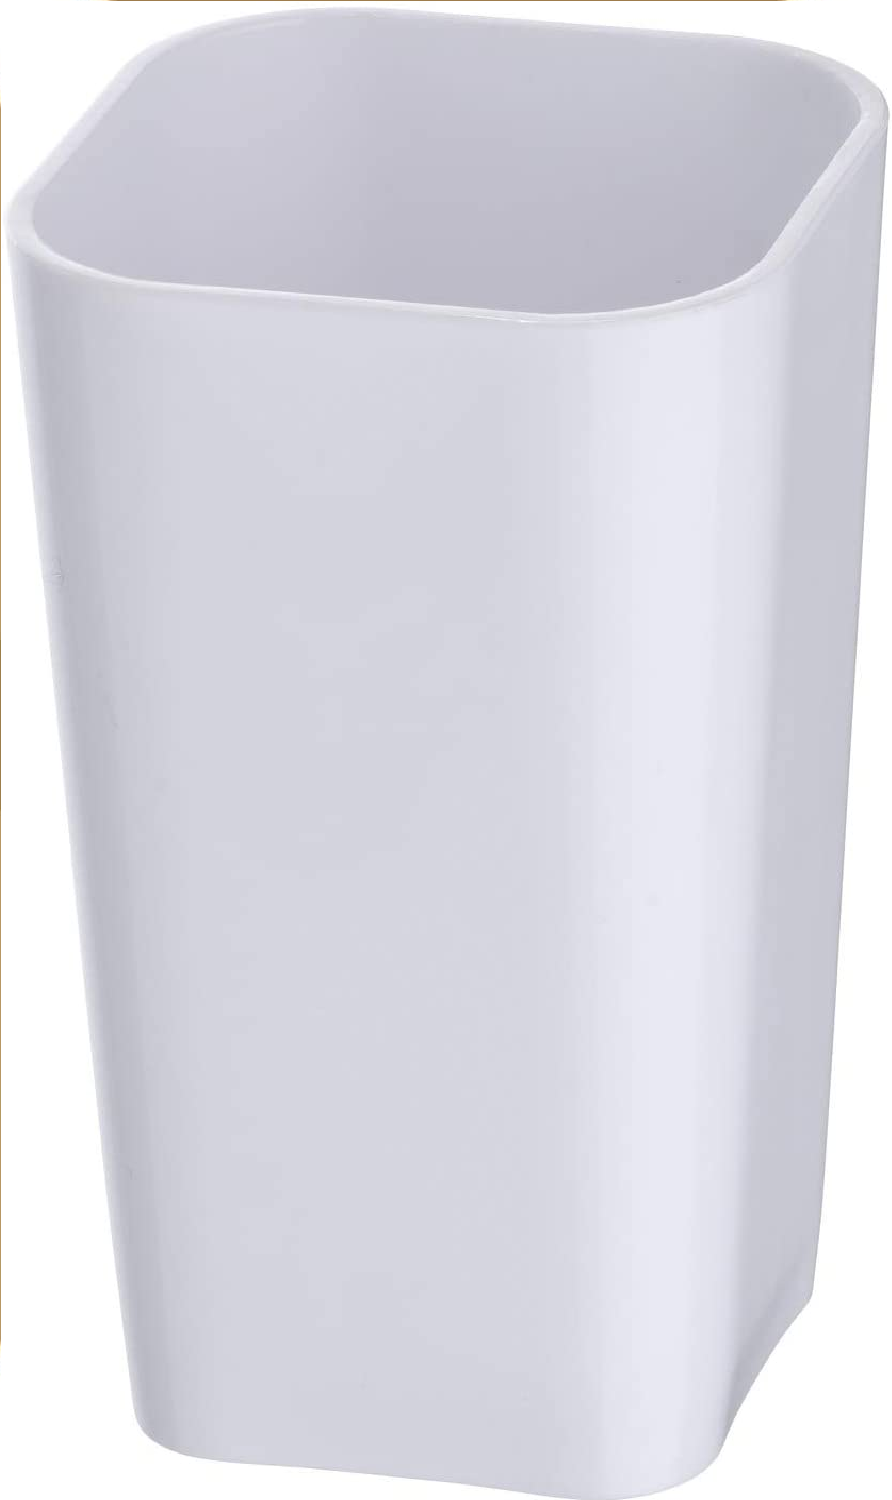 Zahnputzbecher Candy White - Zahnbürstenhalter für und Zahnpasta, Polystyrol, 7 x 11 x 7 cm, Weiß